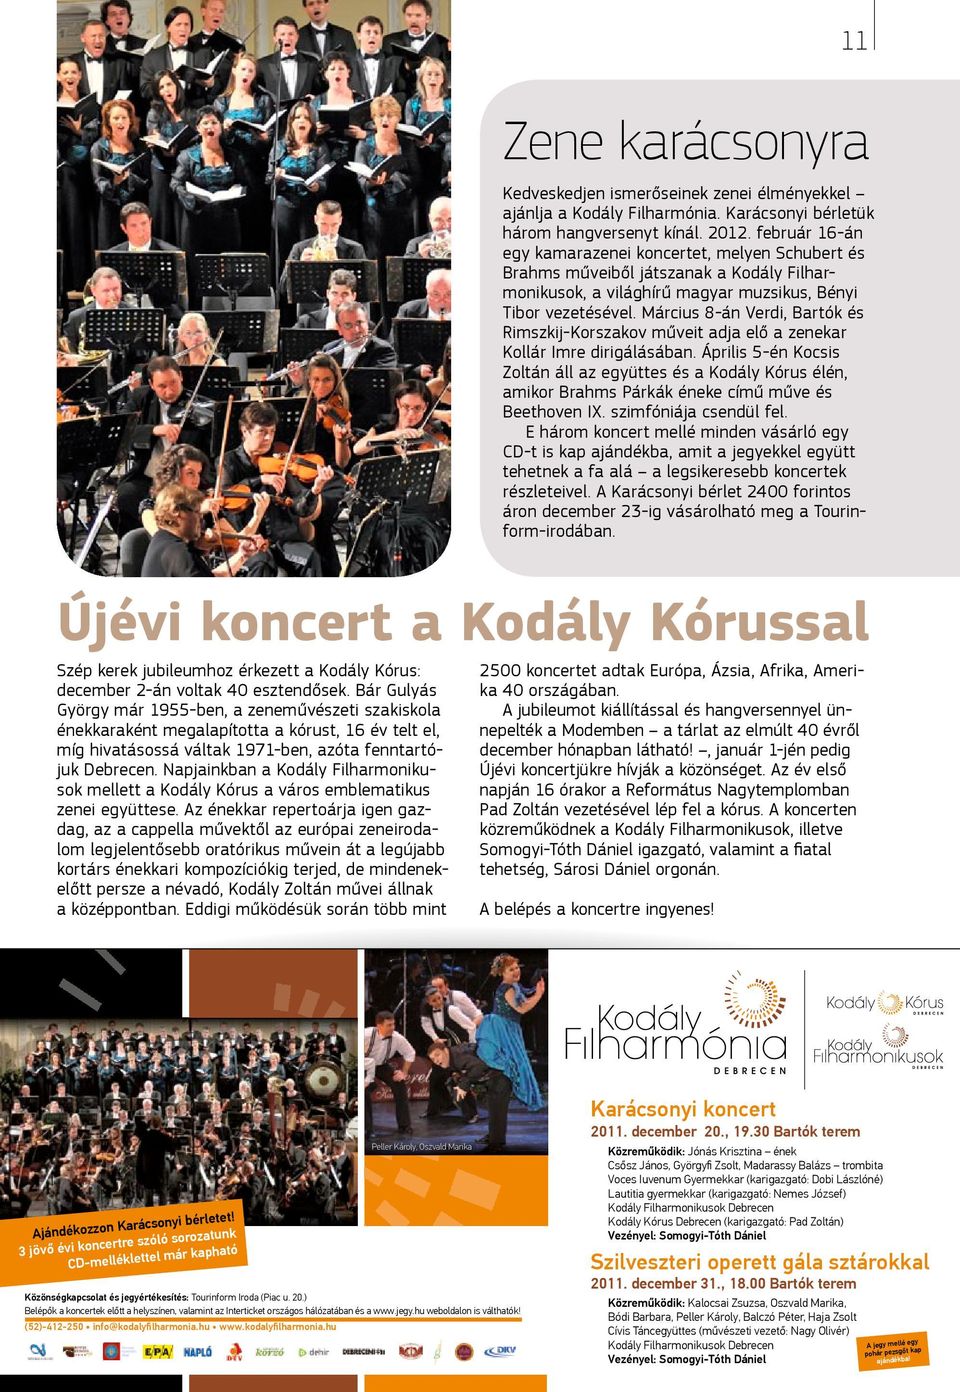 Napjainkban a Kodály Filharmonikusok mellett a Kodály Kórus a város emblematikus zenei együttese.